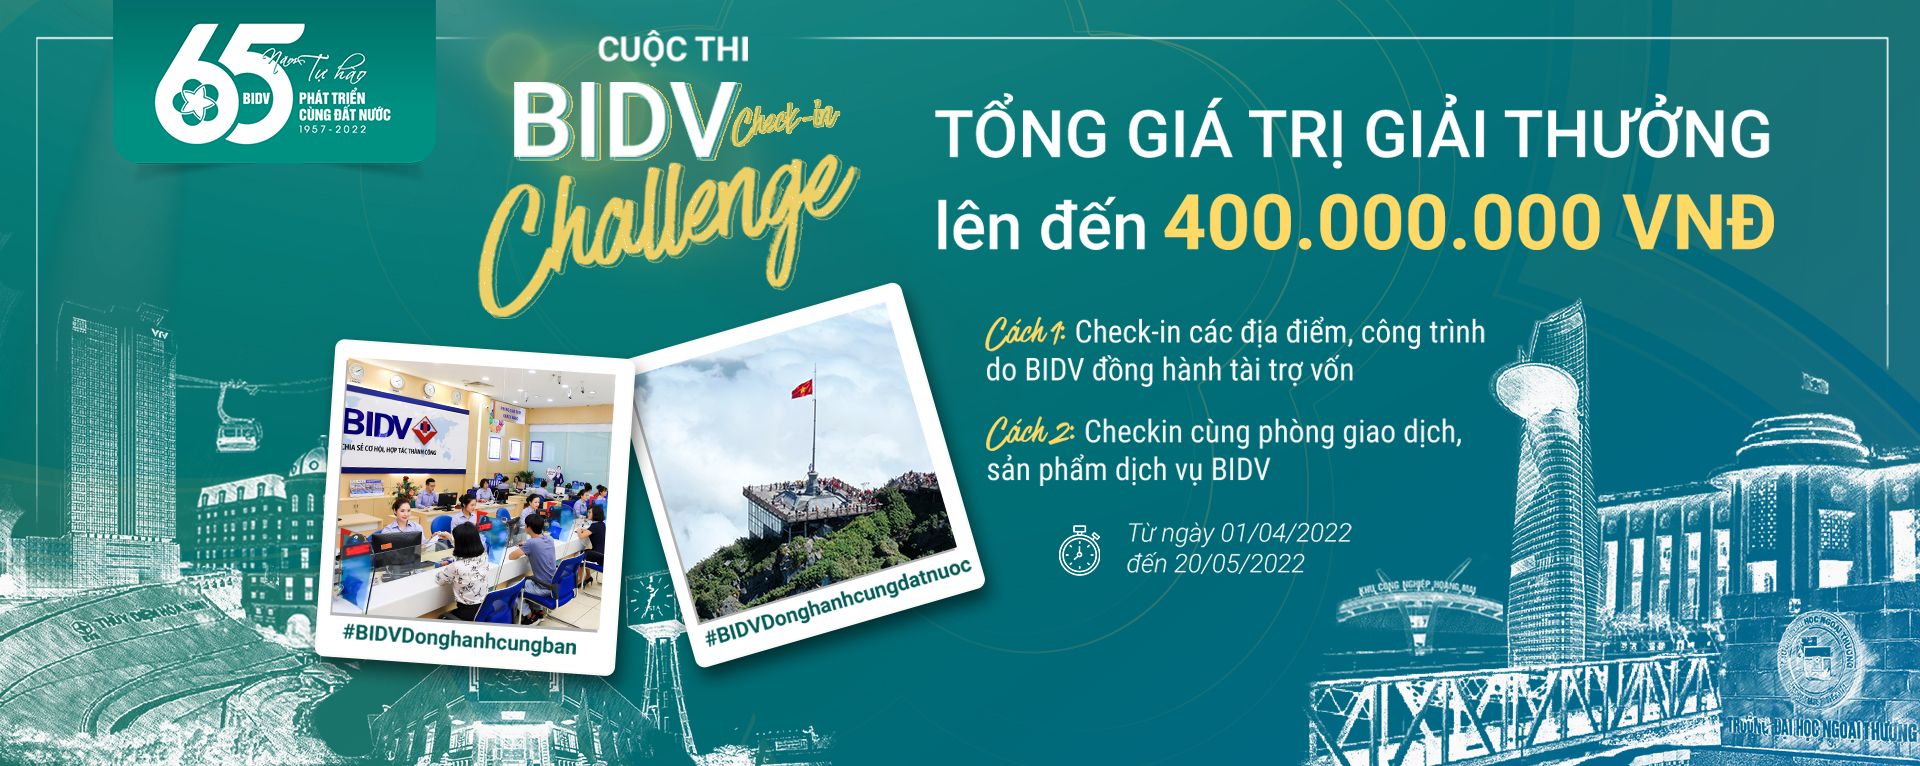 &quot;BIDV check-in challenge&quot;: vi vu khắp đất nước với giải thưởng đến 400 triệu đồng - Ảnh 2.